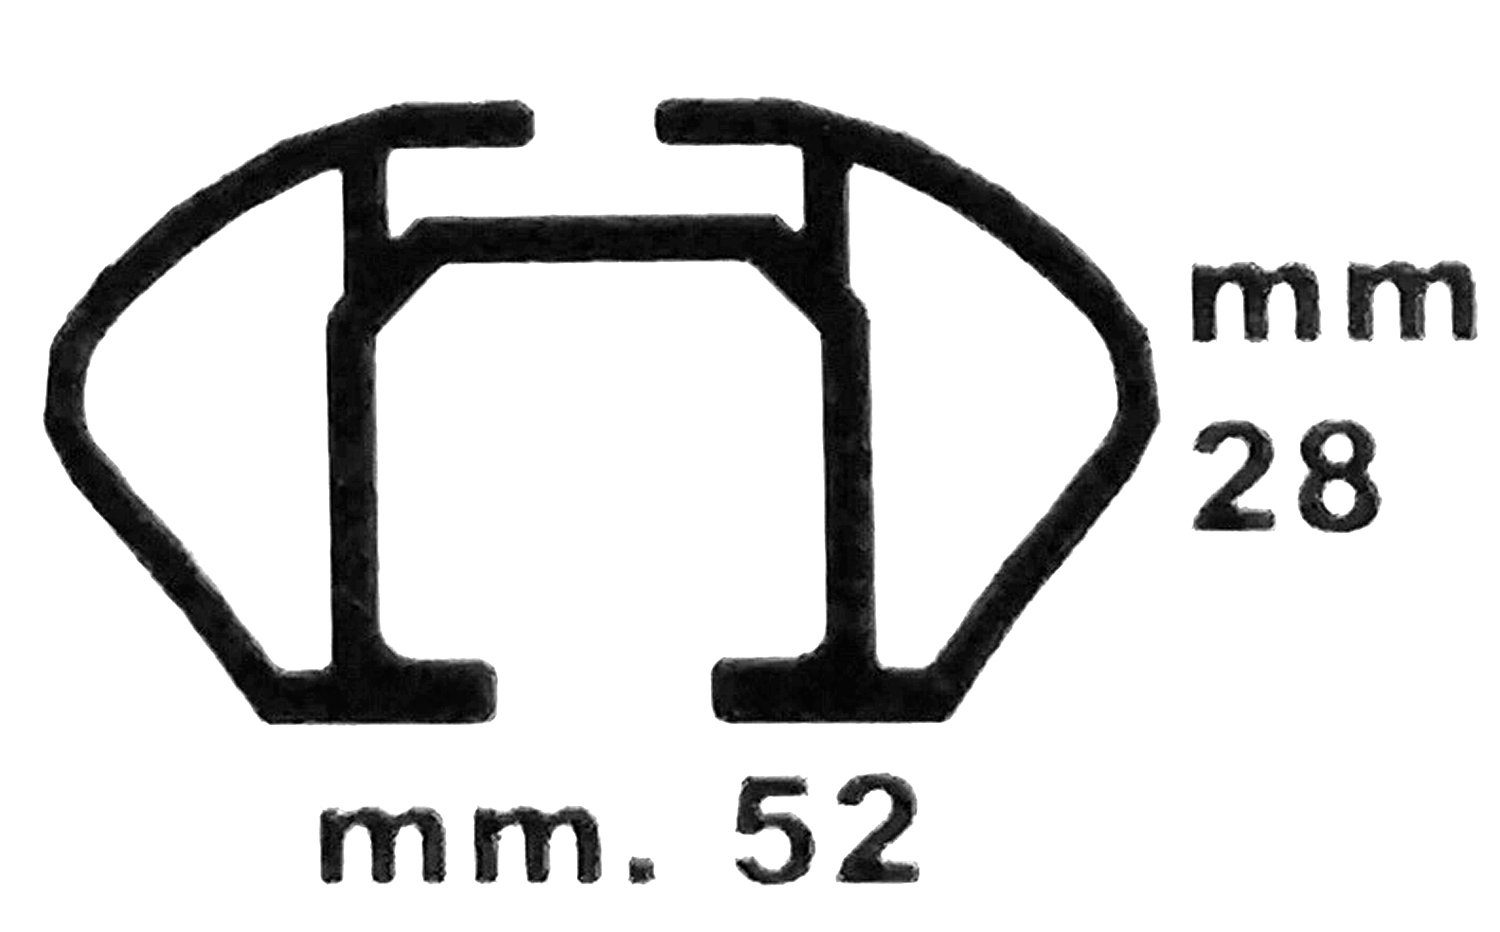 VDP Dachbox, (Für Ihren Opel (B) mit KING1 5-12 Dachträger/Relingträger Vauxhall VDPJUXT600 Opel Vauxhall Türer) (B) im 5-12, Dachträger (5 Zafira + / abschließbar Türer) VDP / Dachbox (5 600Ltr und Zafira Set), Dachbox kompatibel